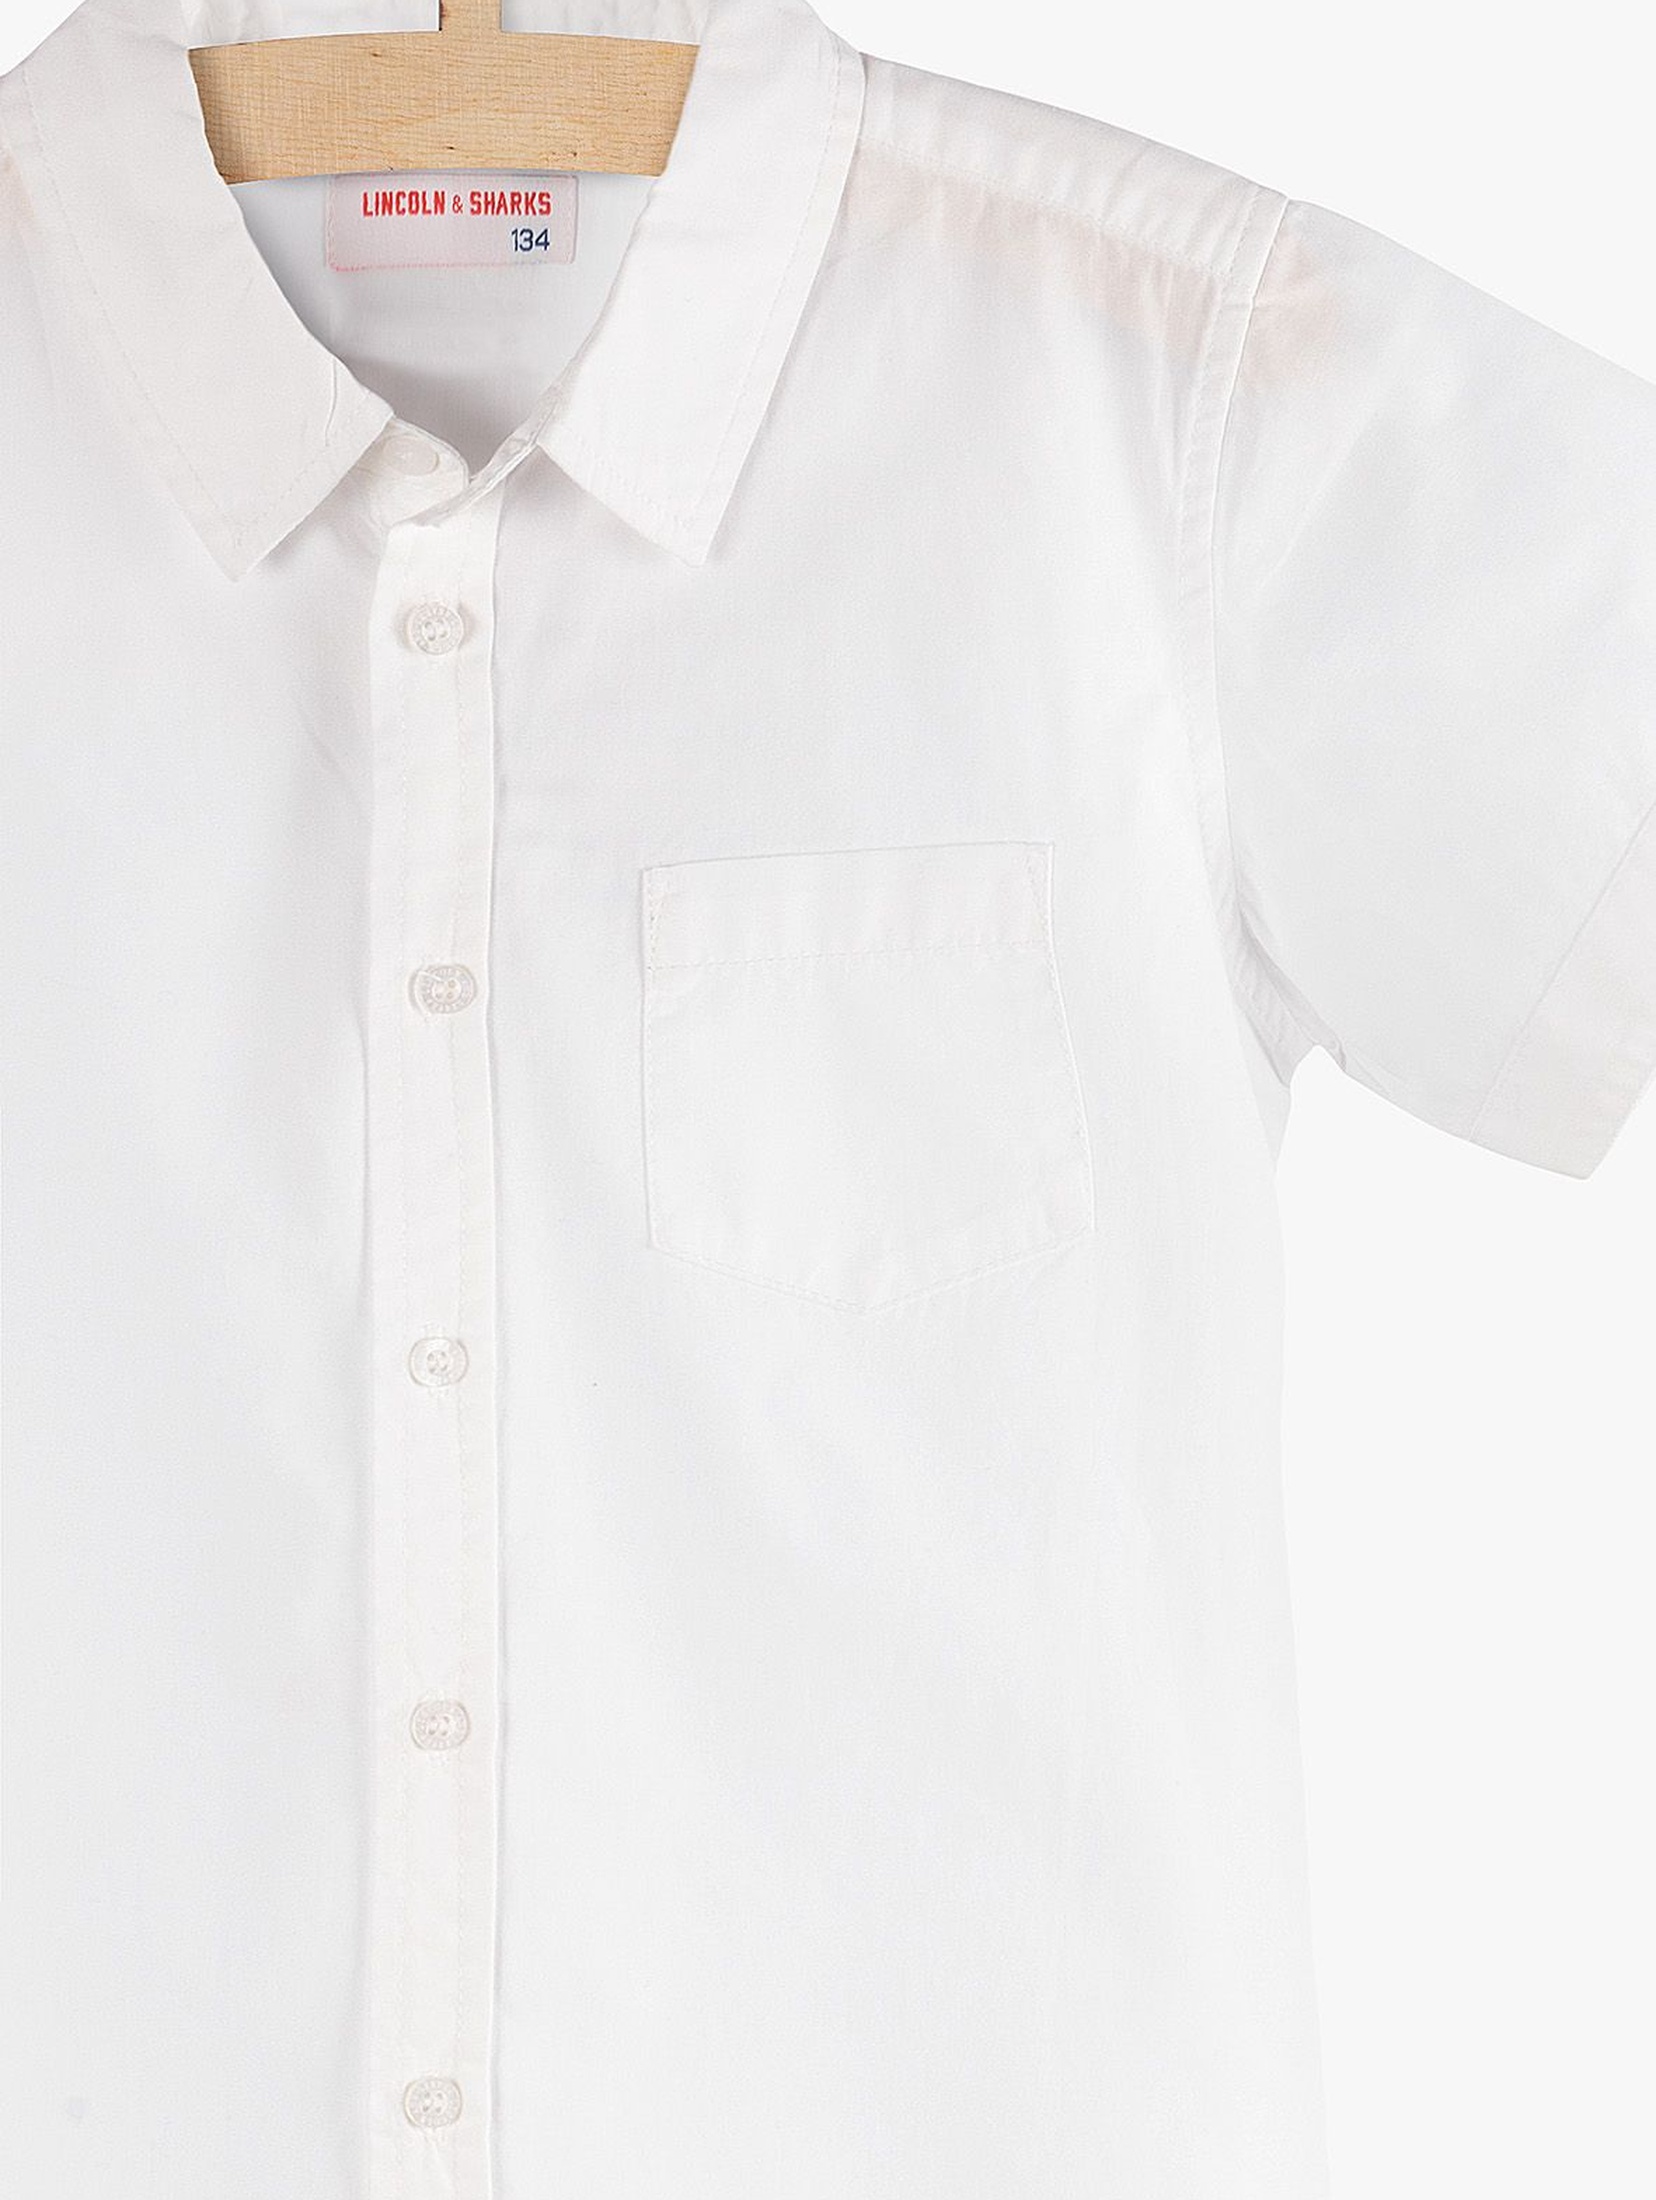 Elegancka biała koszula dla chłopca